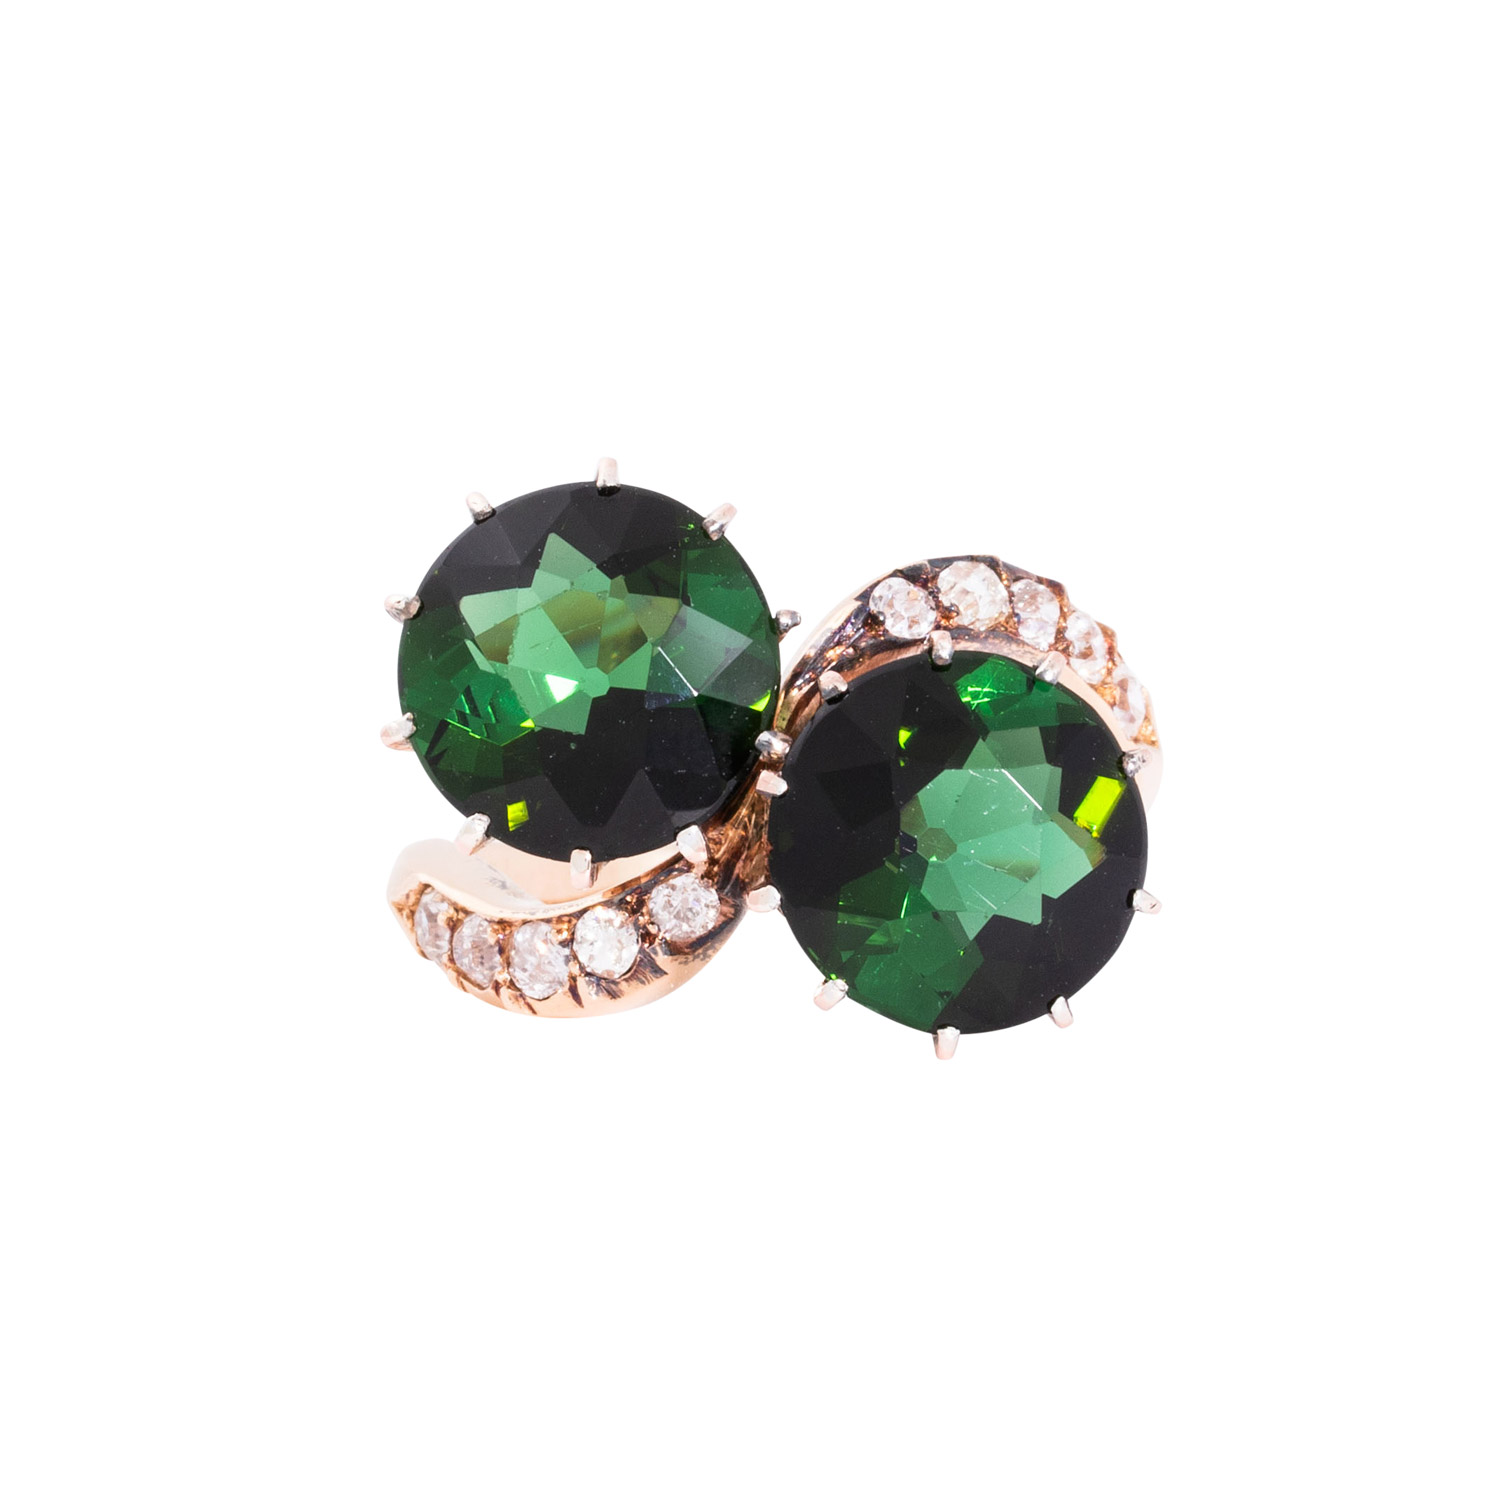 Ring "Toi et moi" mit 2 schönen grünen Turmalinen und Altschiffdiamanten, - Image 2 of 3